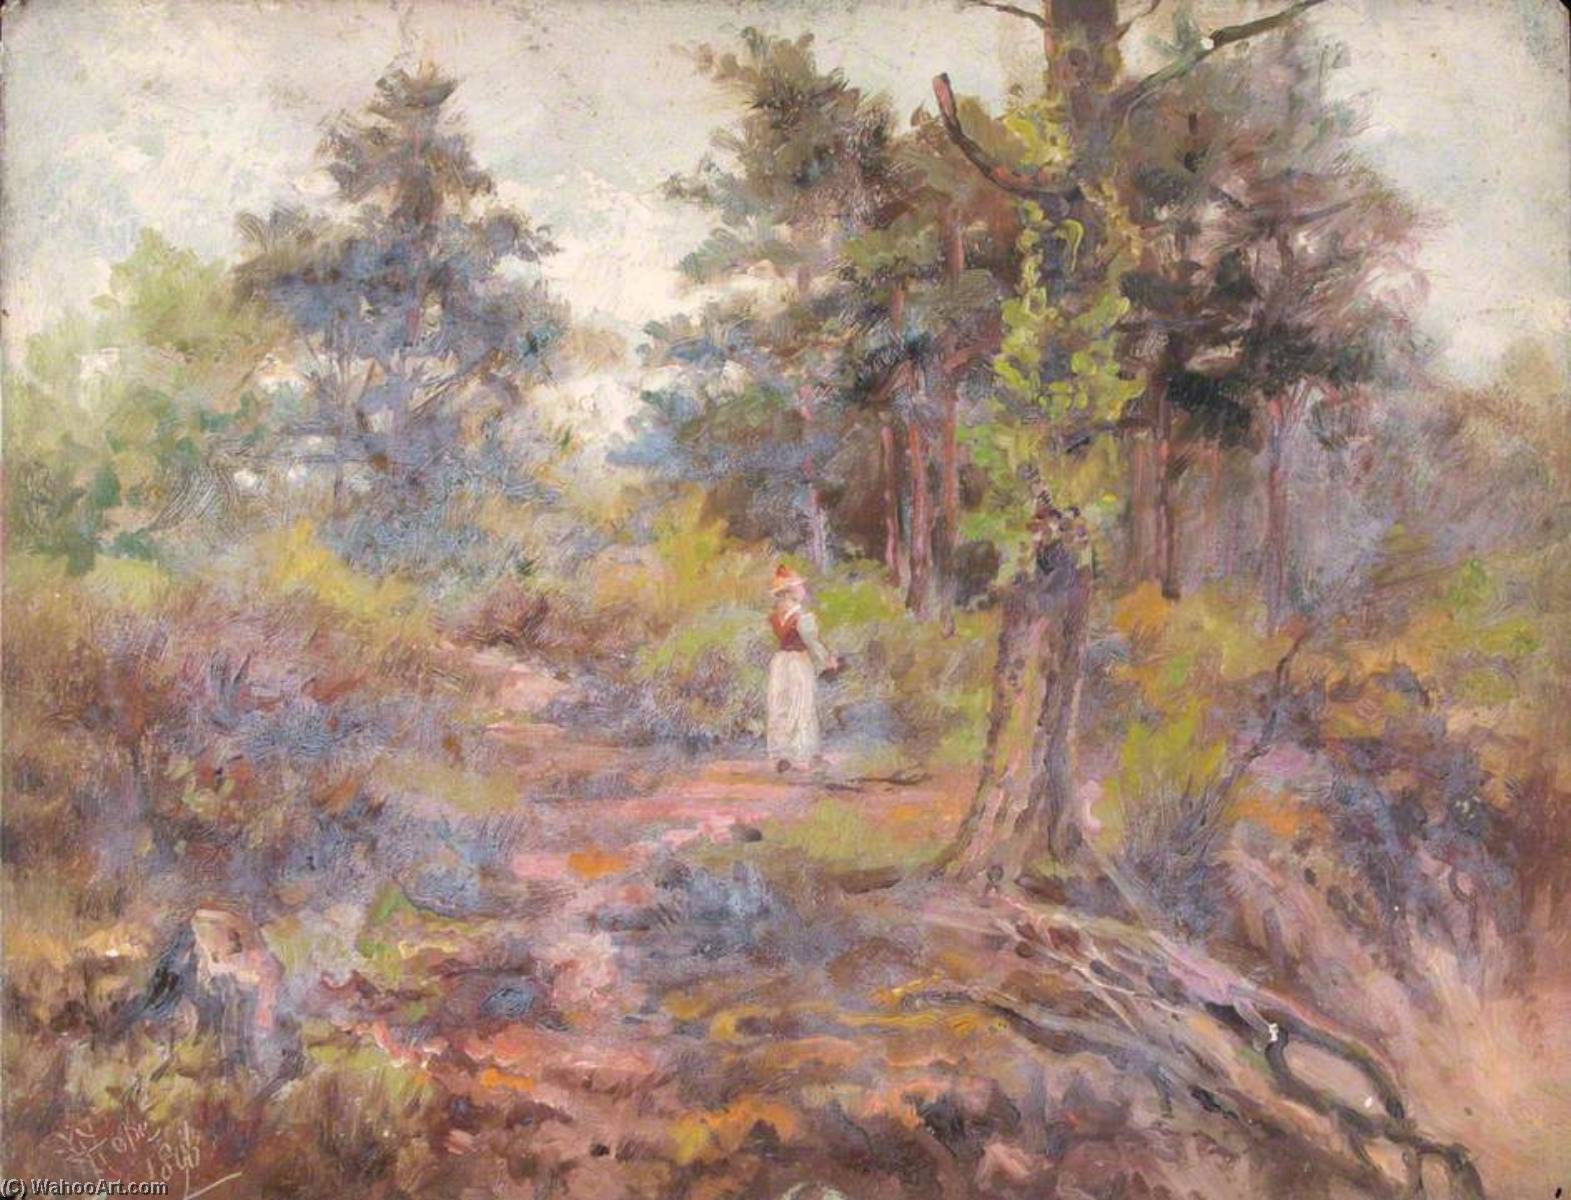 Bestellen Gemälde Reproduktionen Top of the Pit, Croham Hurst, Croydon, Surrey, 1896 von William Henry Hope (1835-1917) | ArtsDot.com